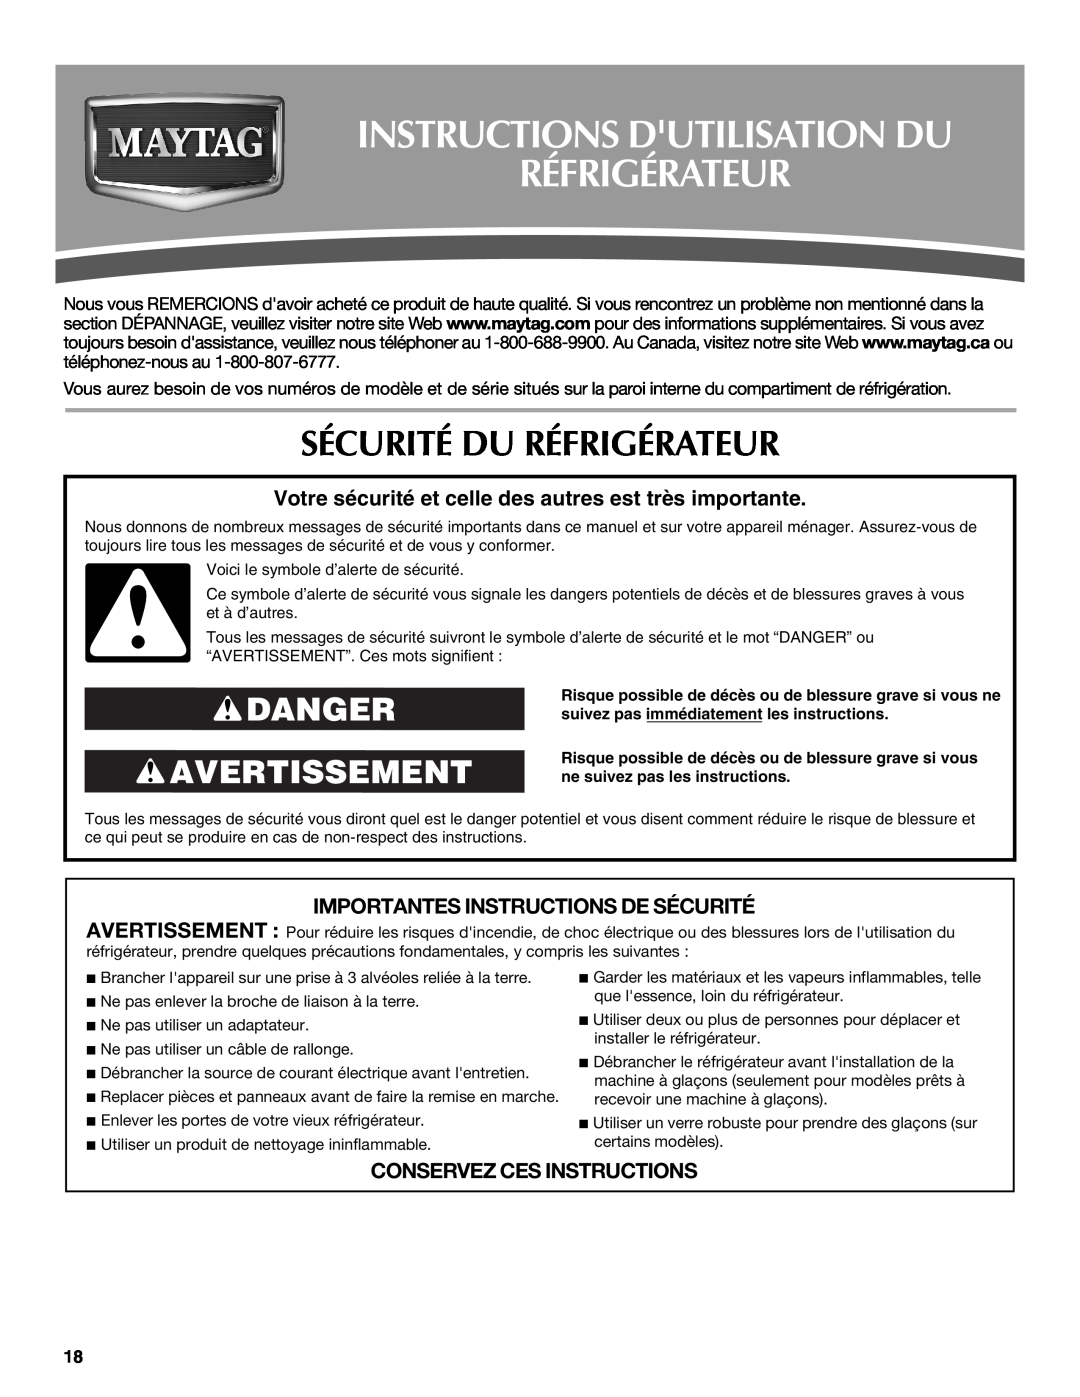 Maytag MSD2272VES Instructions Dutilisation Du Réfrigérateur, Sécurité Du Réfrigérateur, Danger Avertissement 